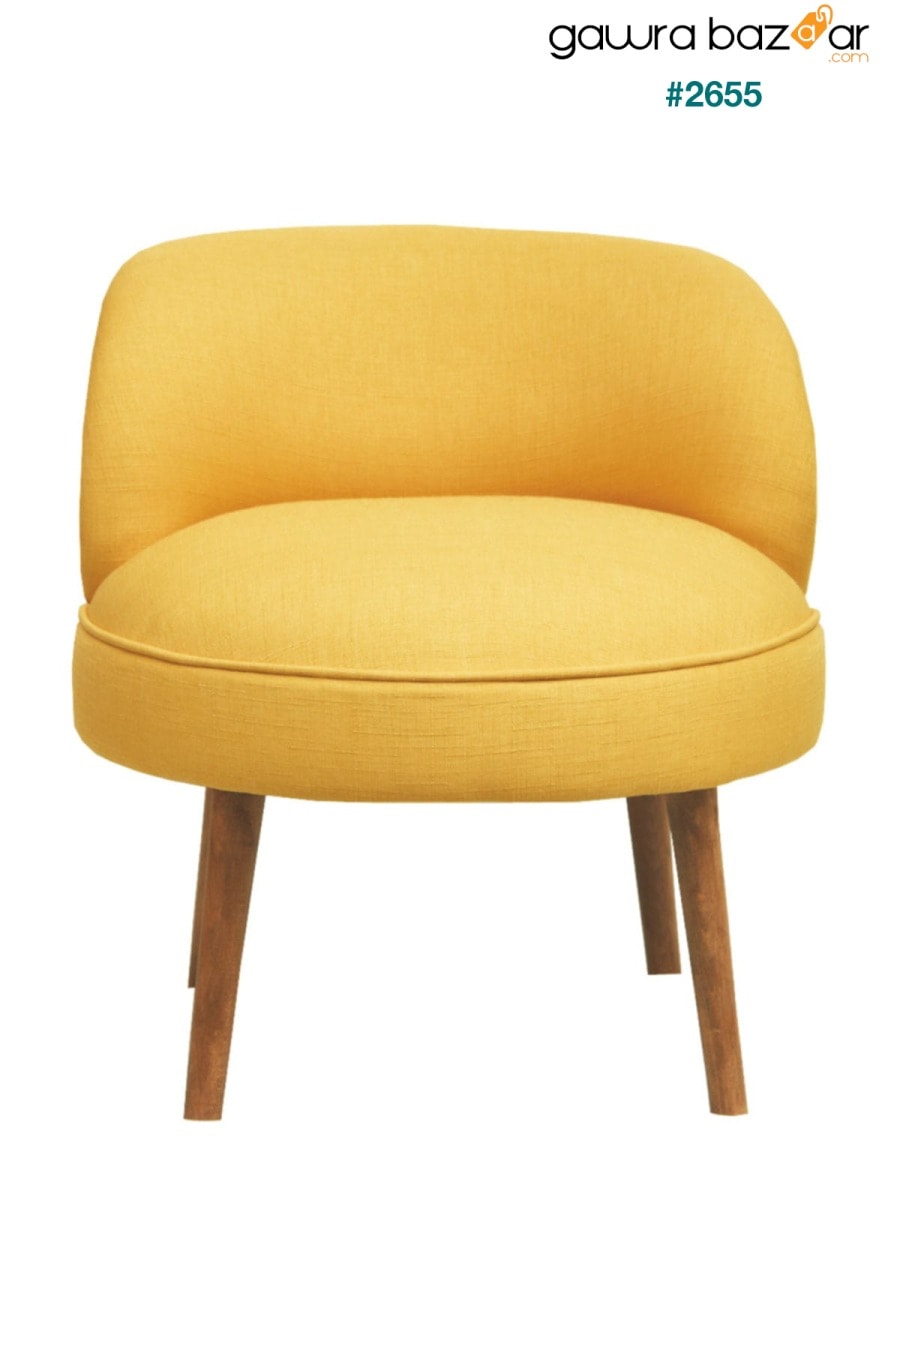 أريكة واحدة لطيفة صفراء Ze10 Design 0